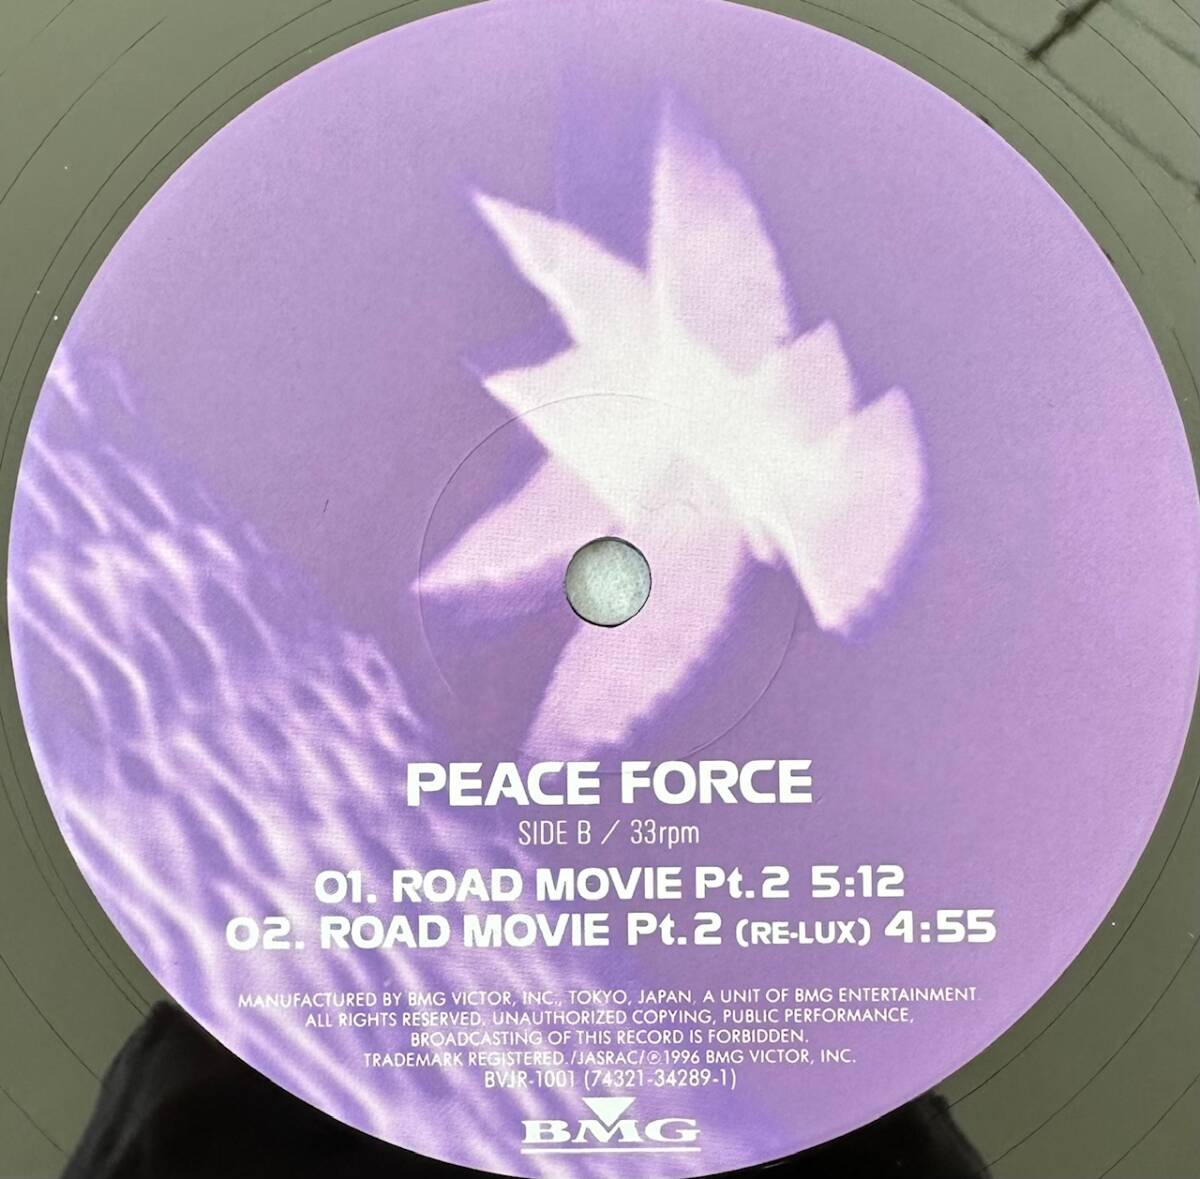 ■1996年 オリジナル 国内盤 PEACE FORCE - INNER SPACE COWBOY 12”EP BVJR 1001 BMG Victor Inc._画像4